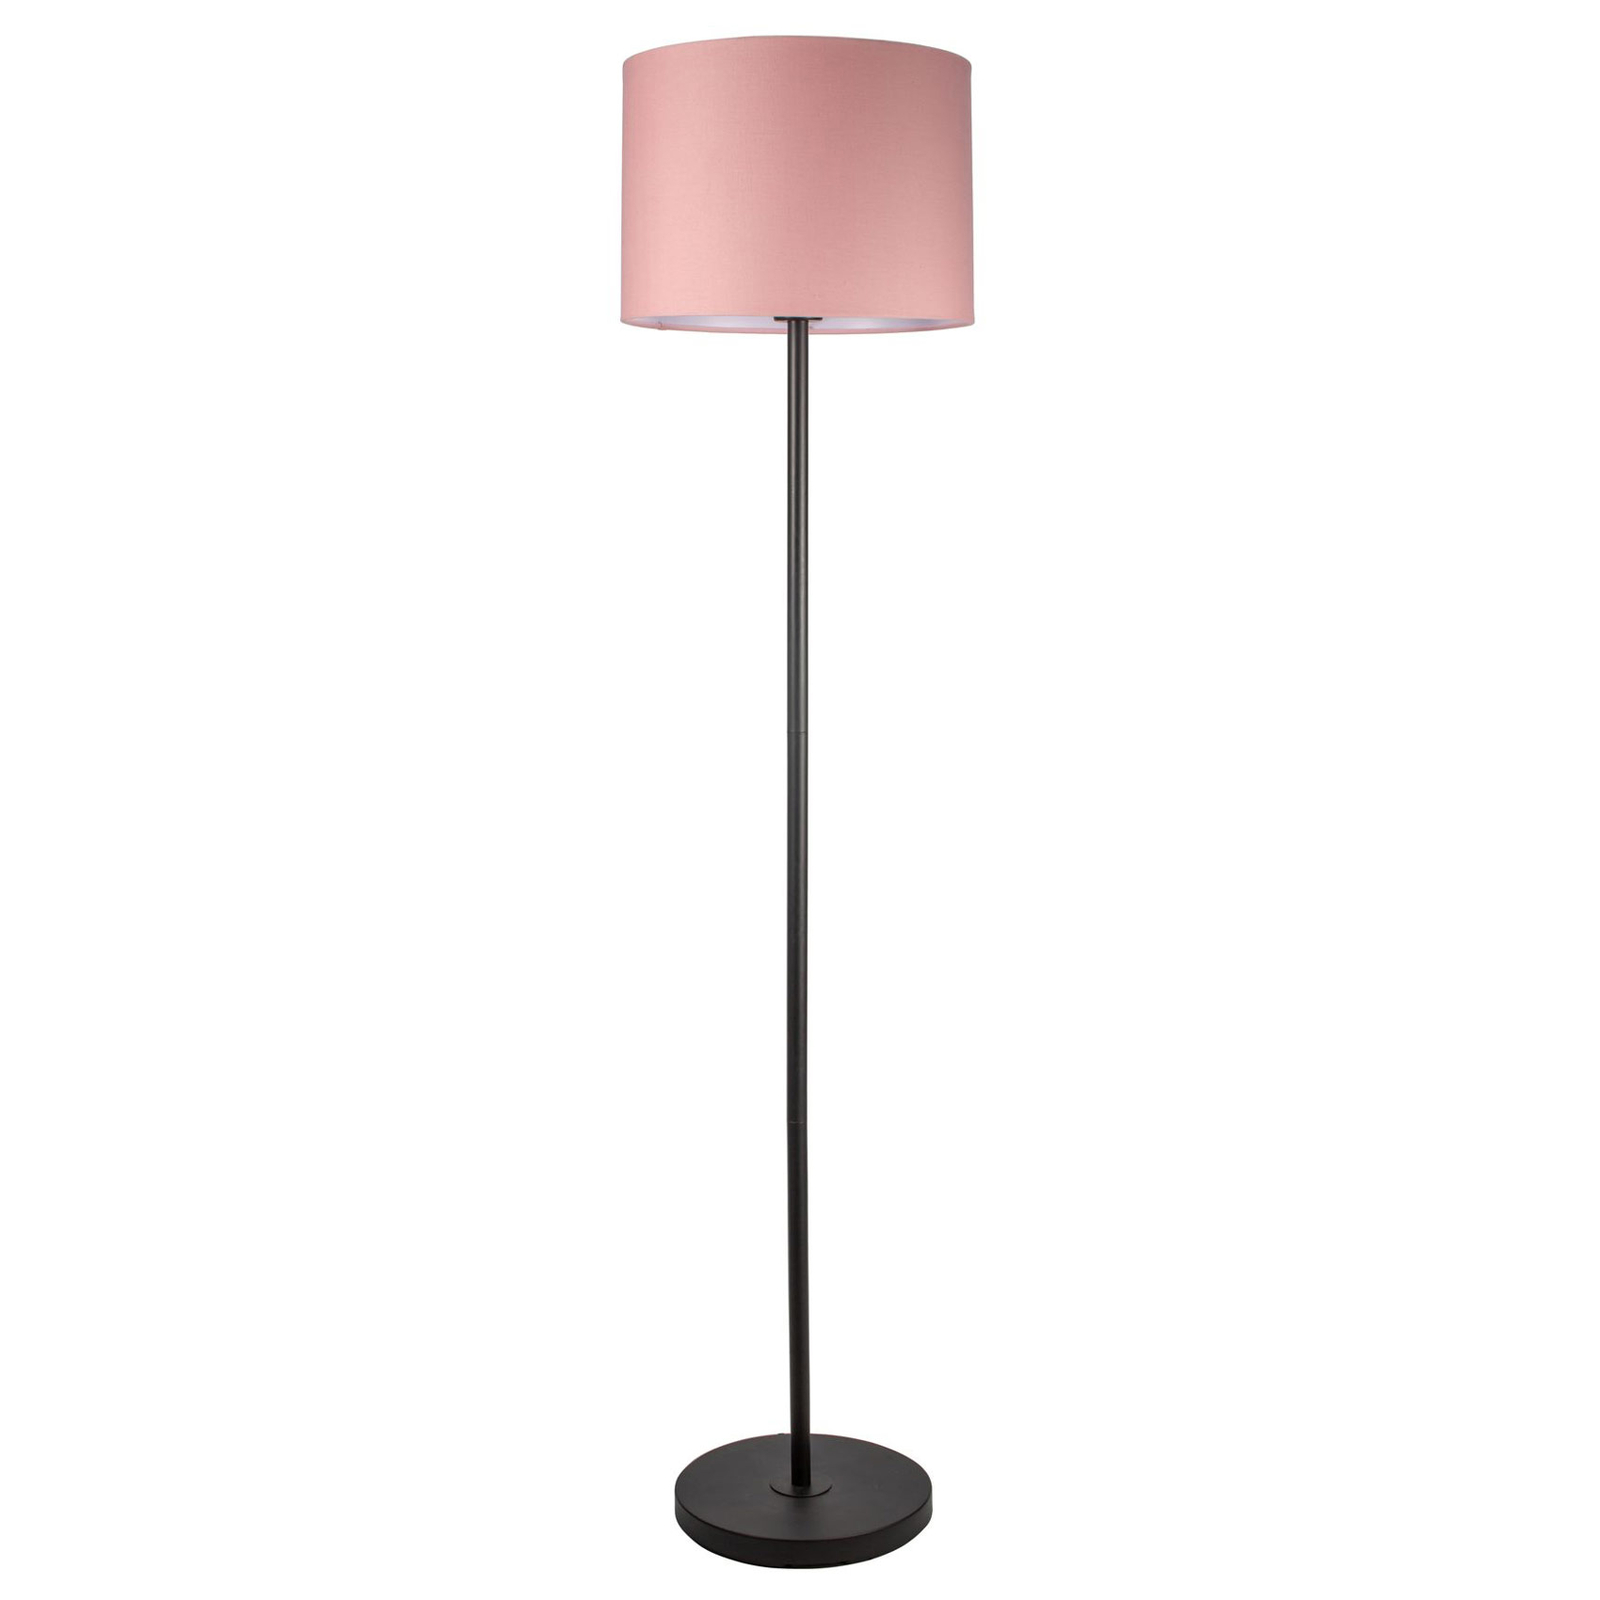 Pauleen Grand Reverie stojací lampa v růžové/černé